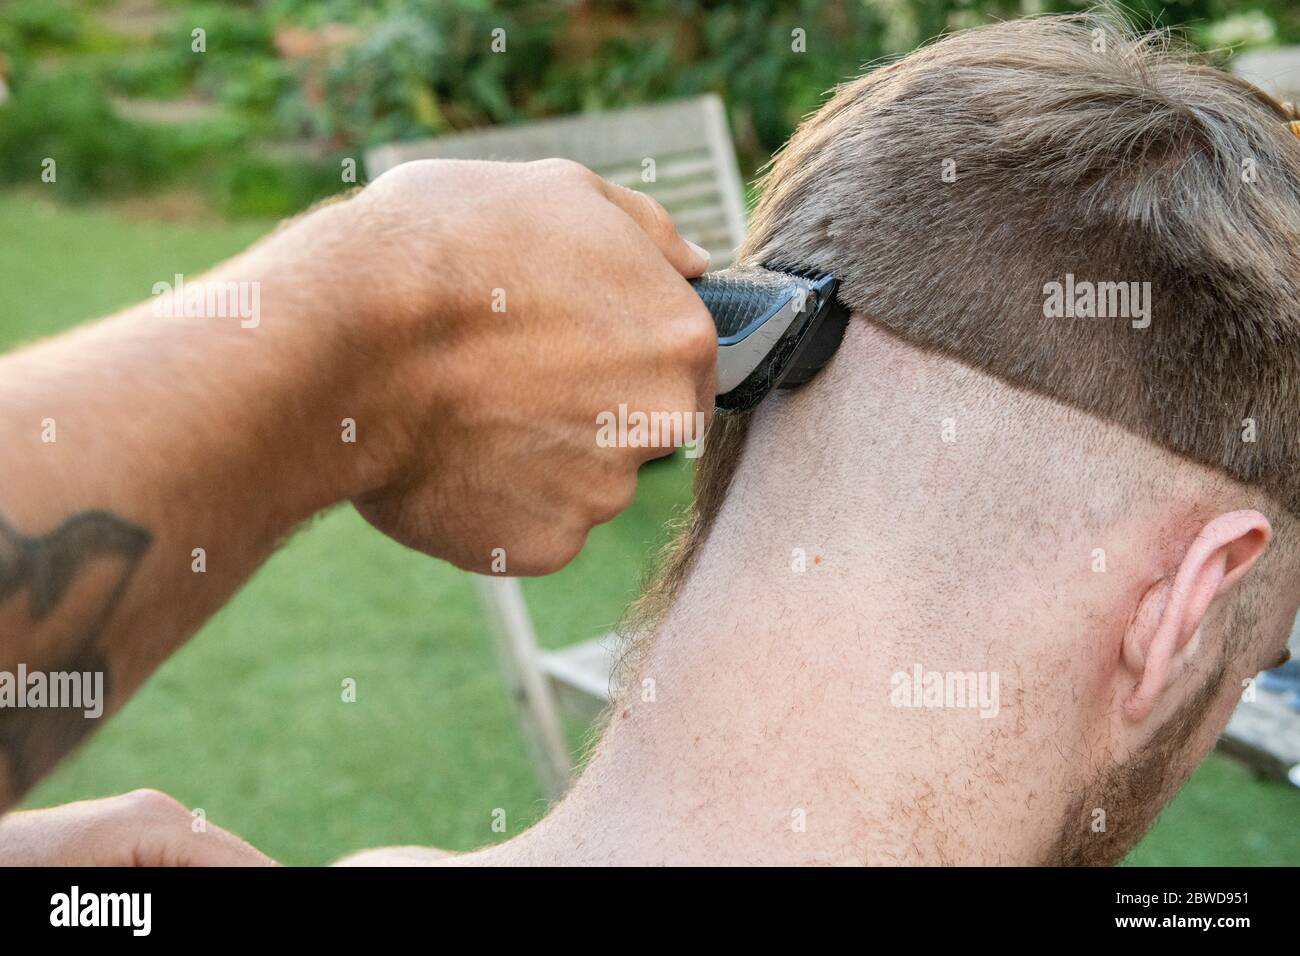 Ein Mann versucht, einem anderen Mann während der Coronavirus-Sperre die Haare zu schneiden, wenn Friseure geschlossen sind, und lässt den Schwanz einer Ratte auf einer Seite des Kopfes liegen Stockfoto